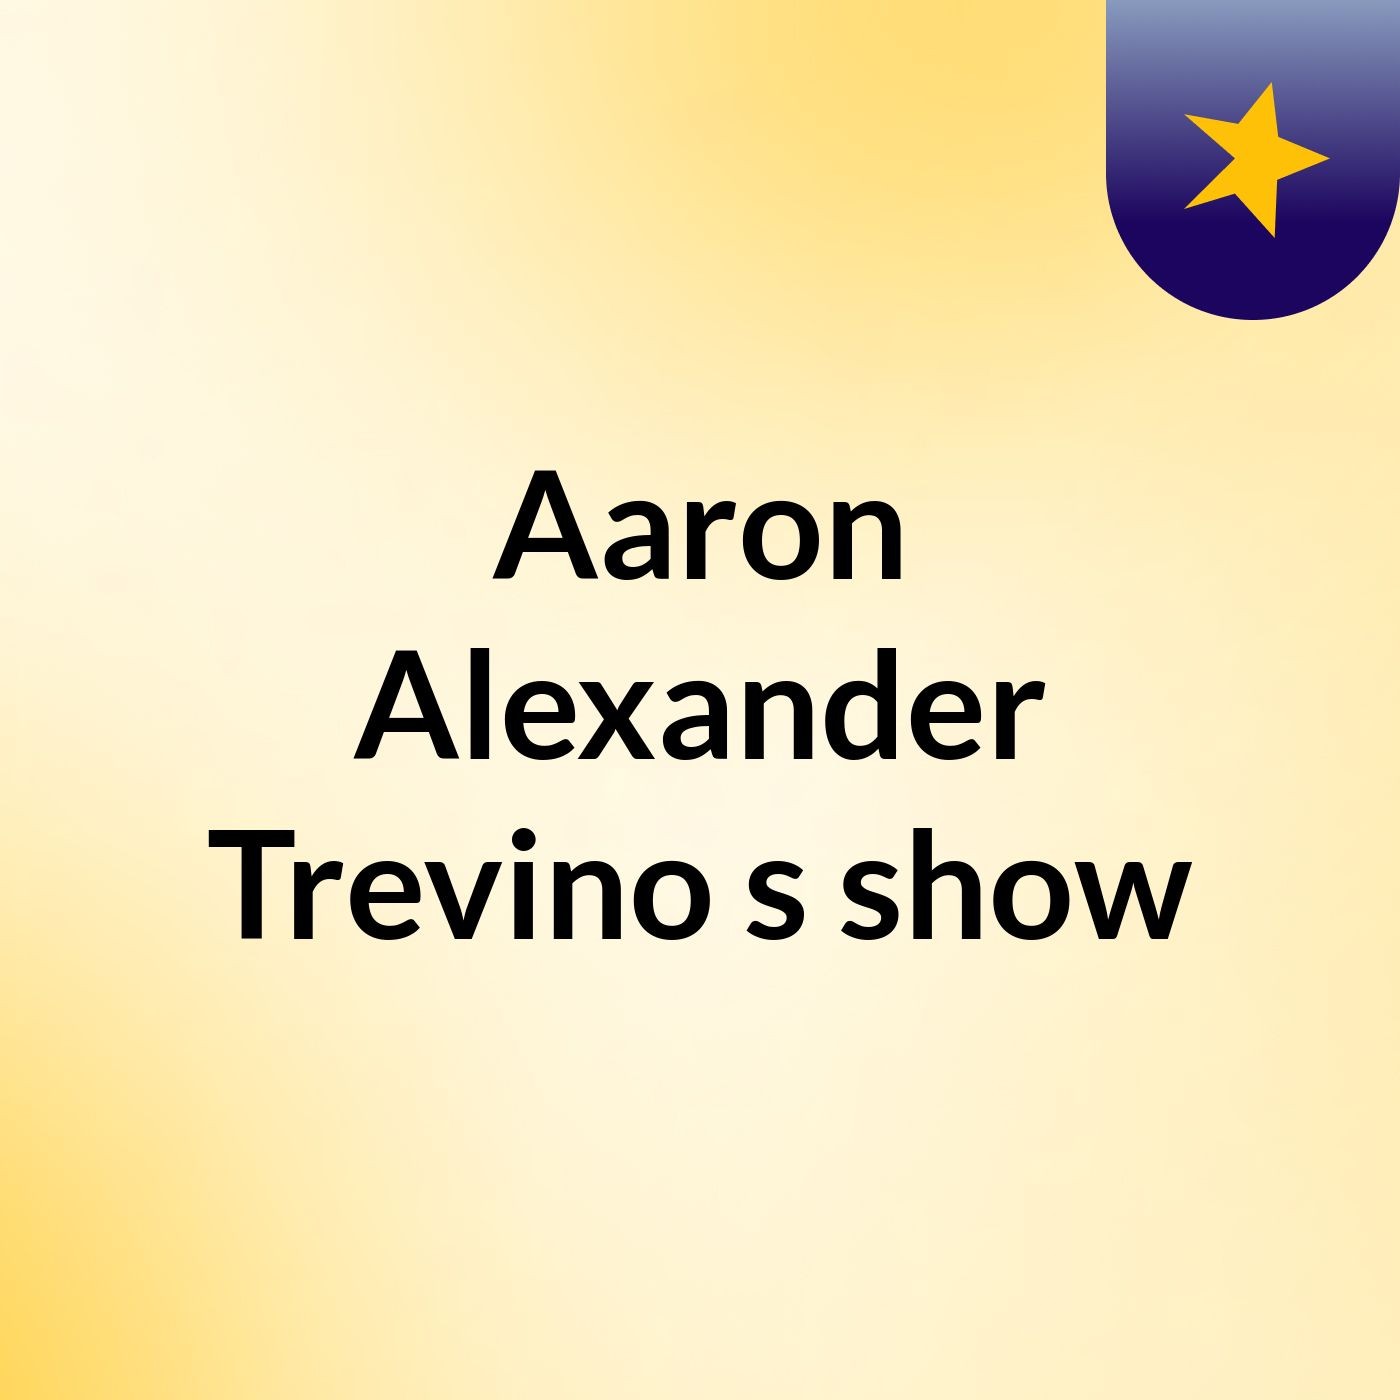 Aaron Alexander Trevino's show